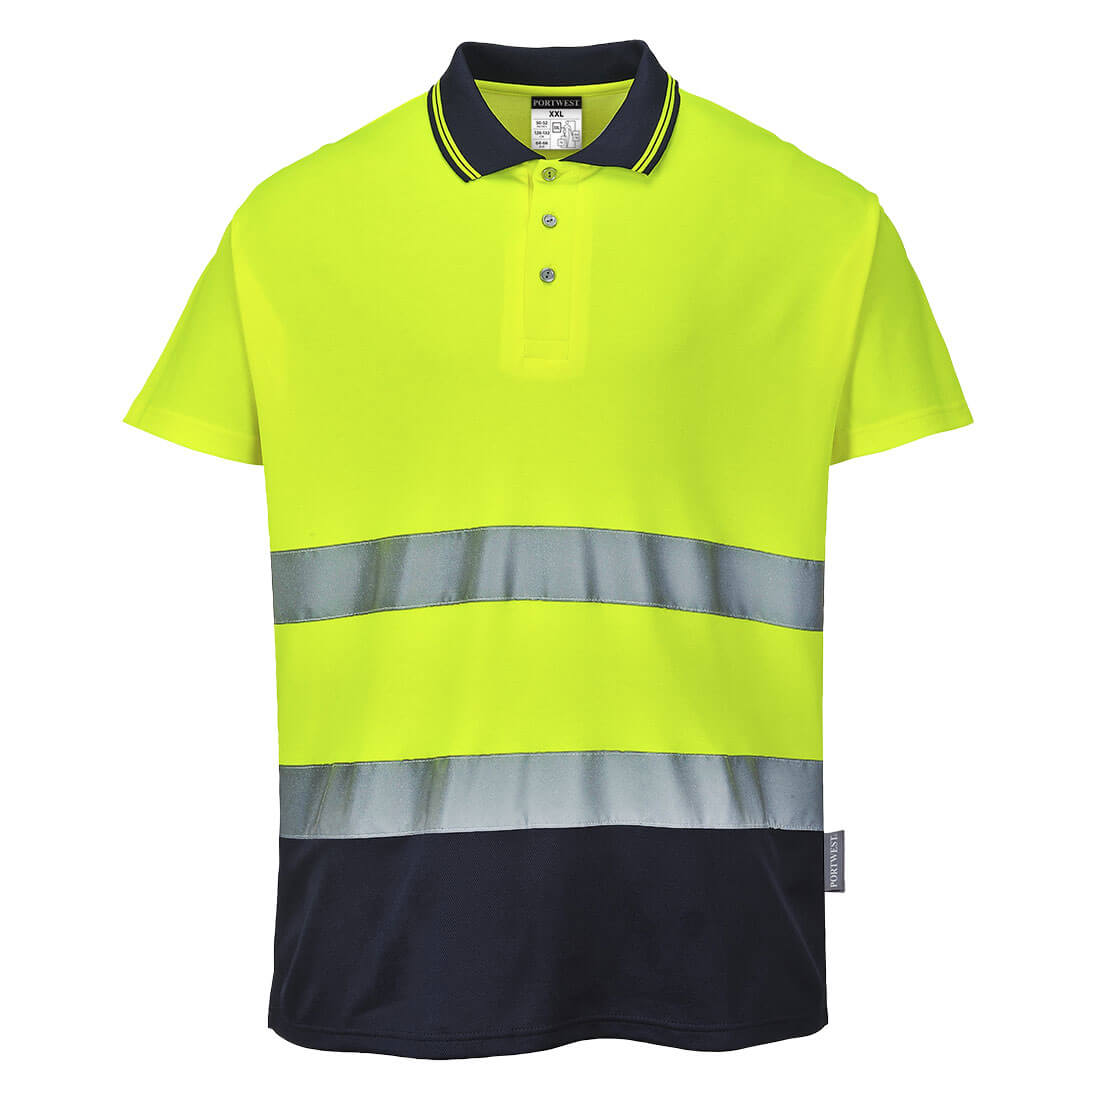 Portwest S174 Two Tone Cotton Comfort Hi Vis Polo Shirt 1#colour_yellow-navy